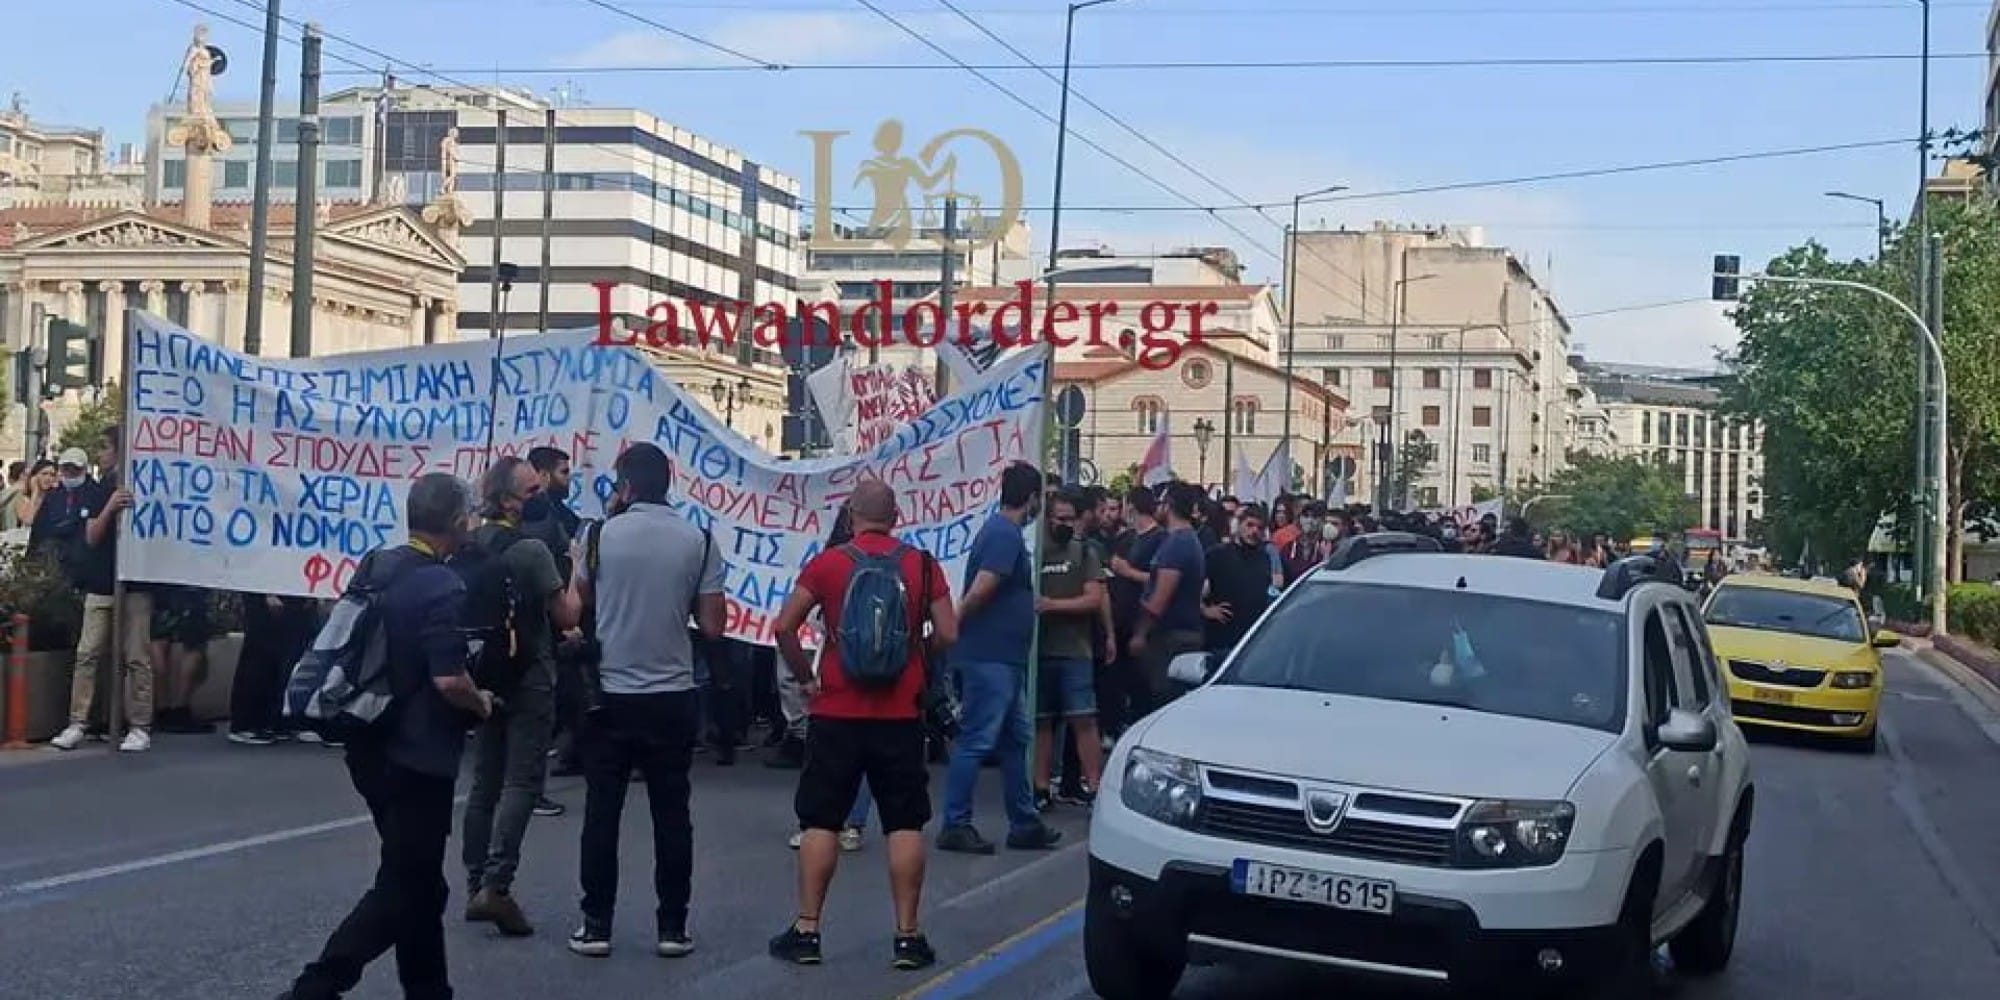 Φοιτητικό συλλαλητήριο στο κέντρο της Αθήνας ενάντια στην Πανεπιστημιακή Αστυνομία